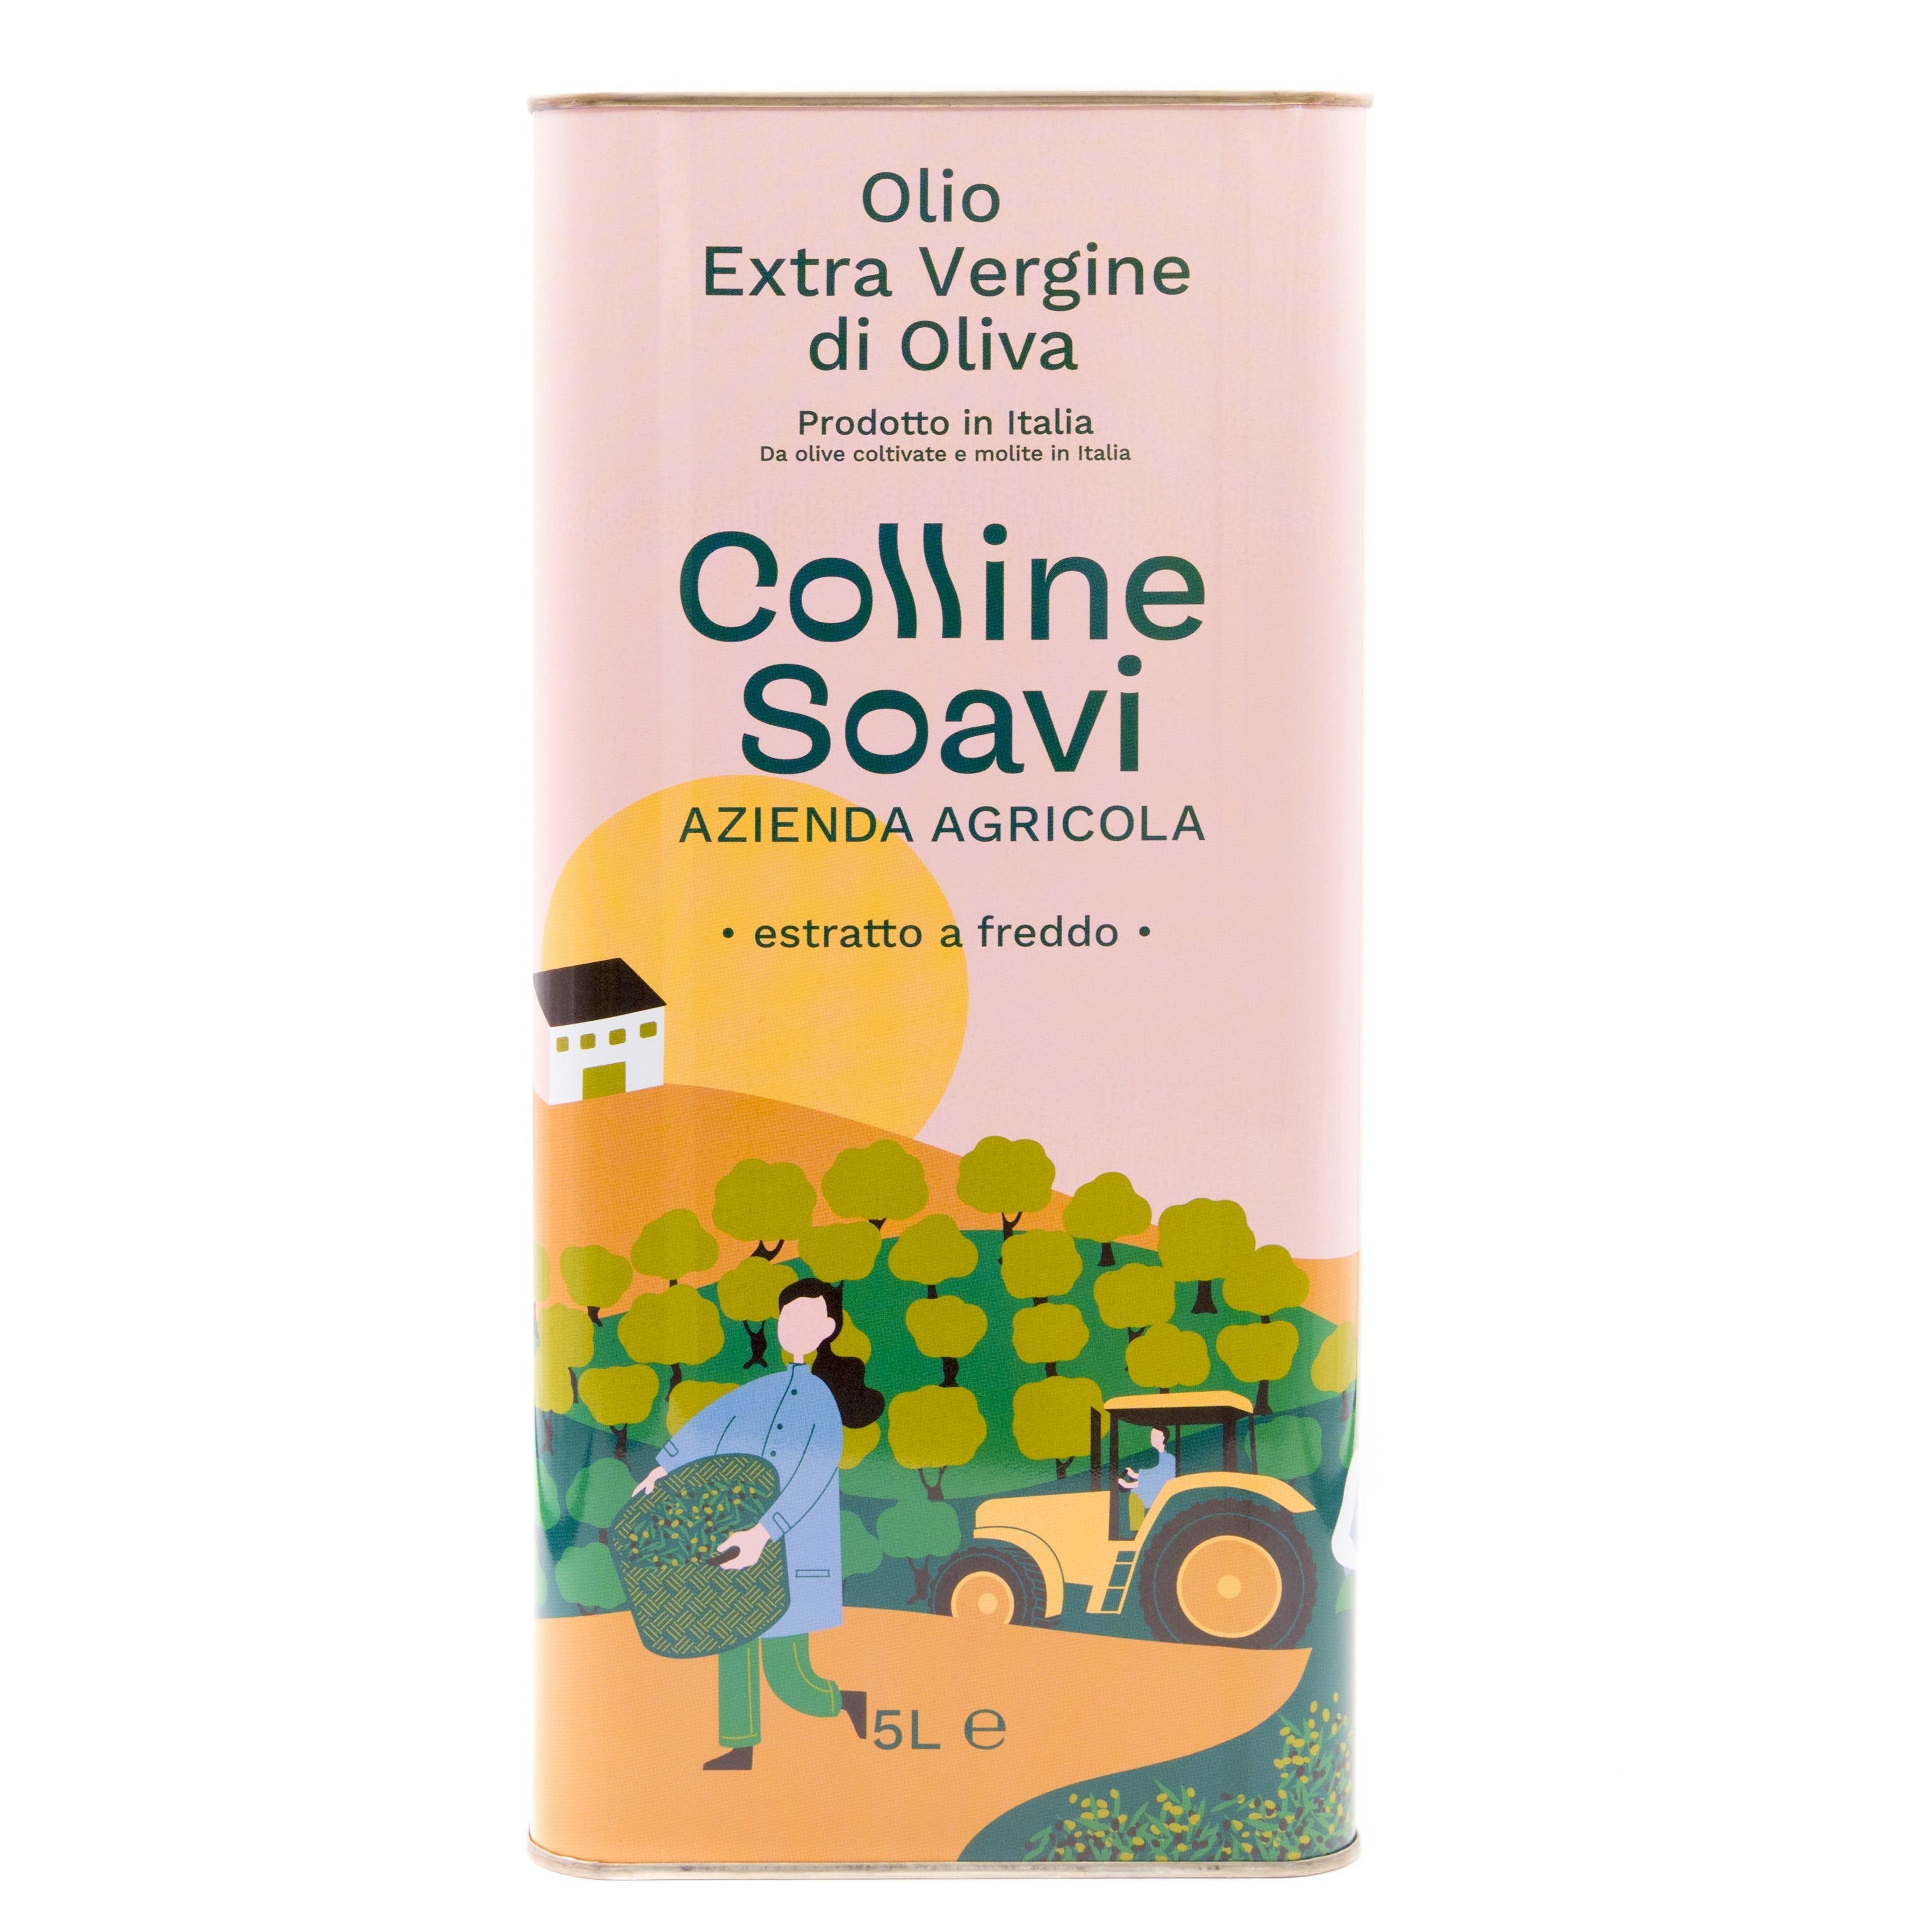 Olio Extra Vergine di Oliva Colline Soavi, Confezione di 2 Latte da 5L - 2022/23